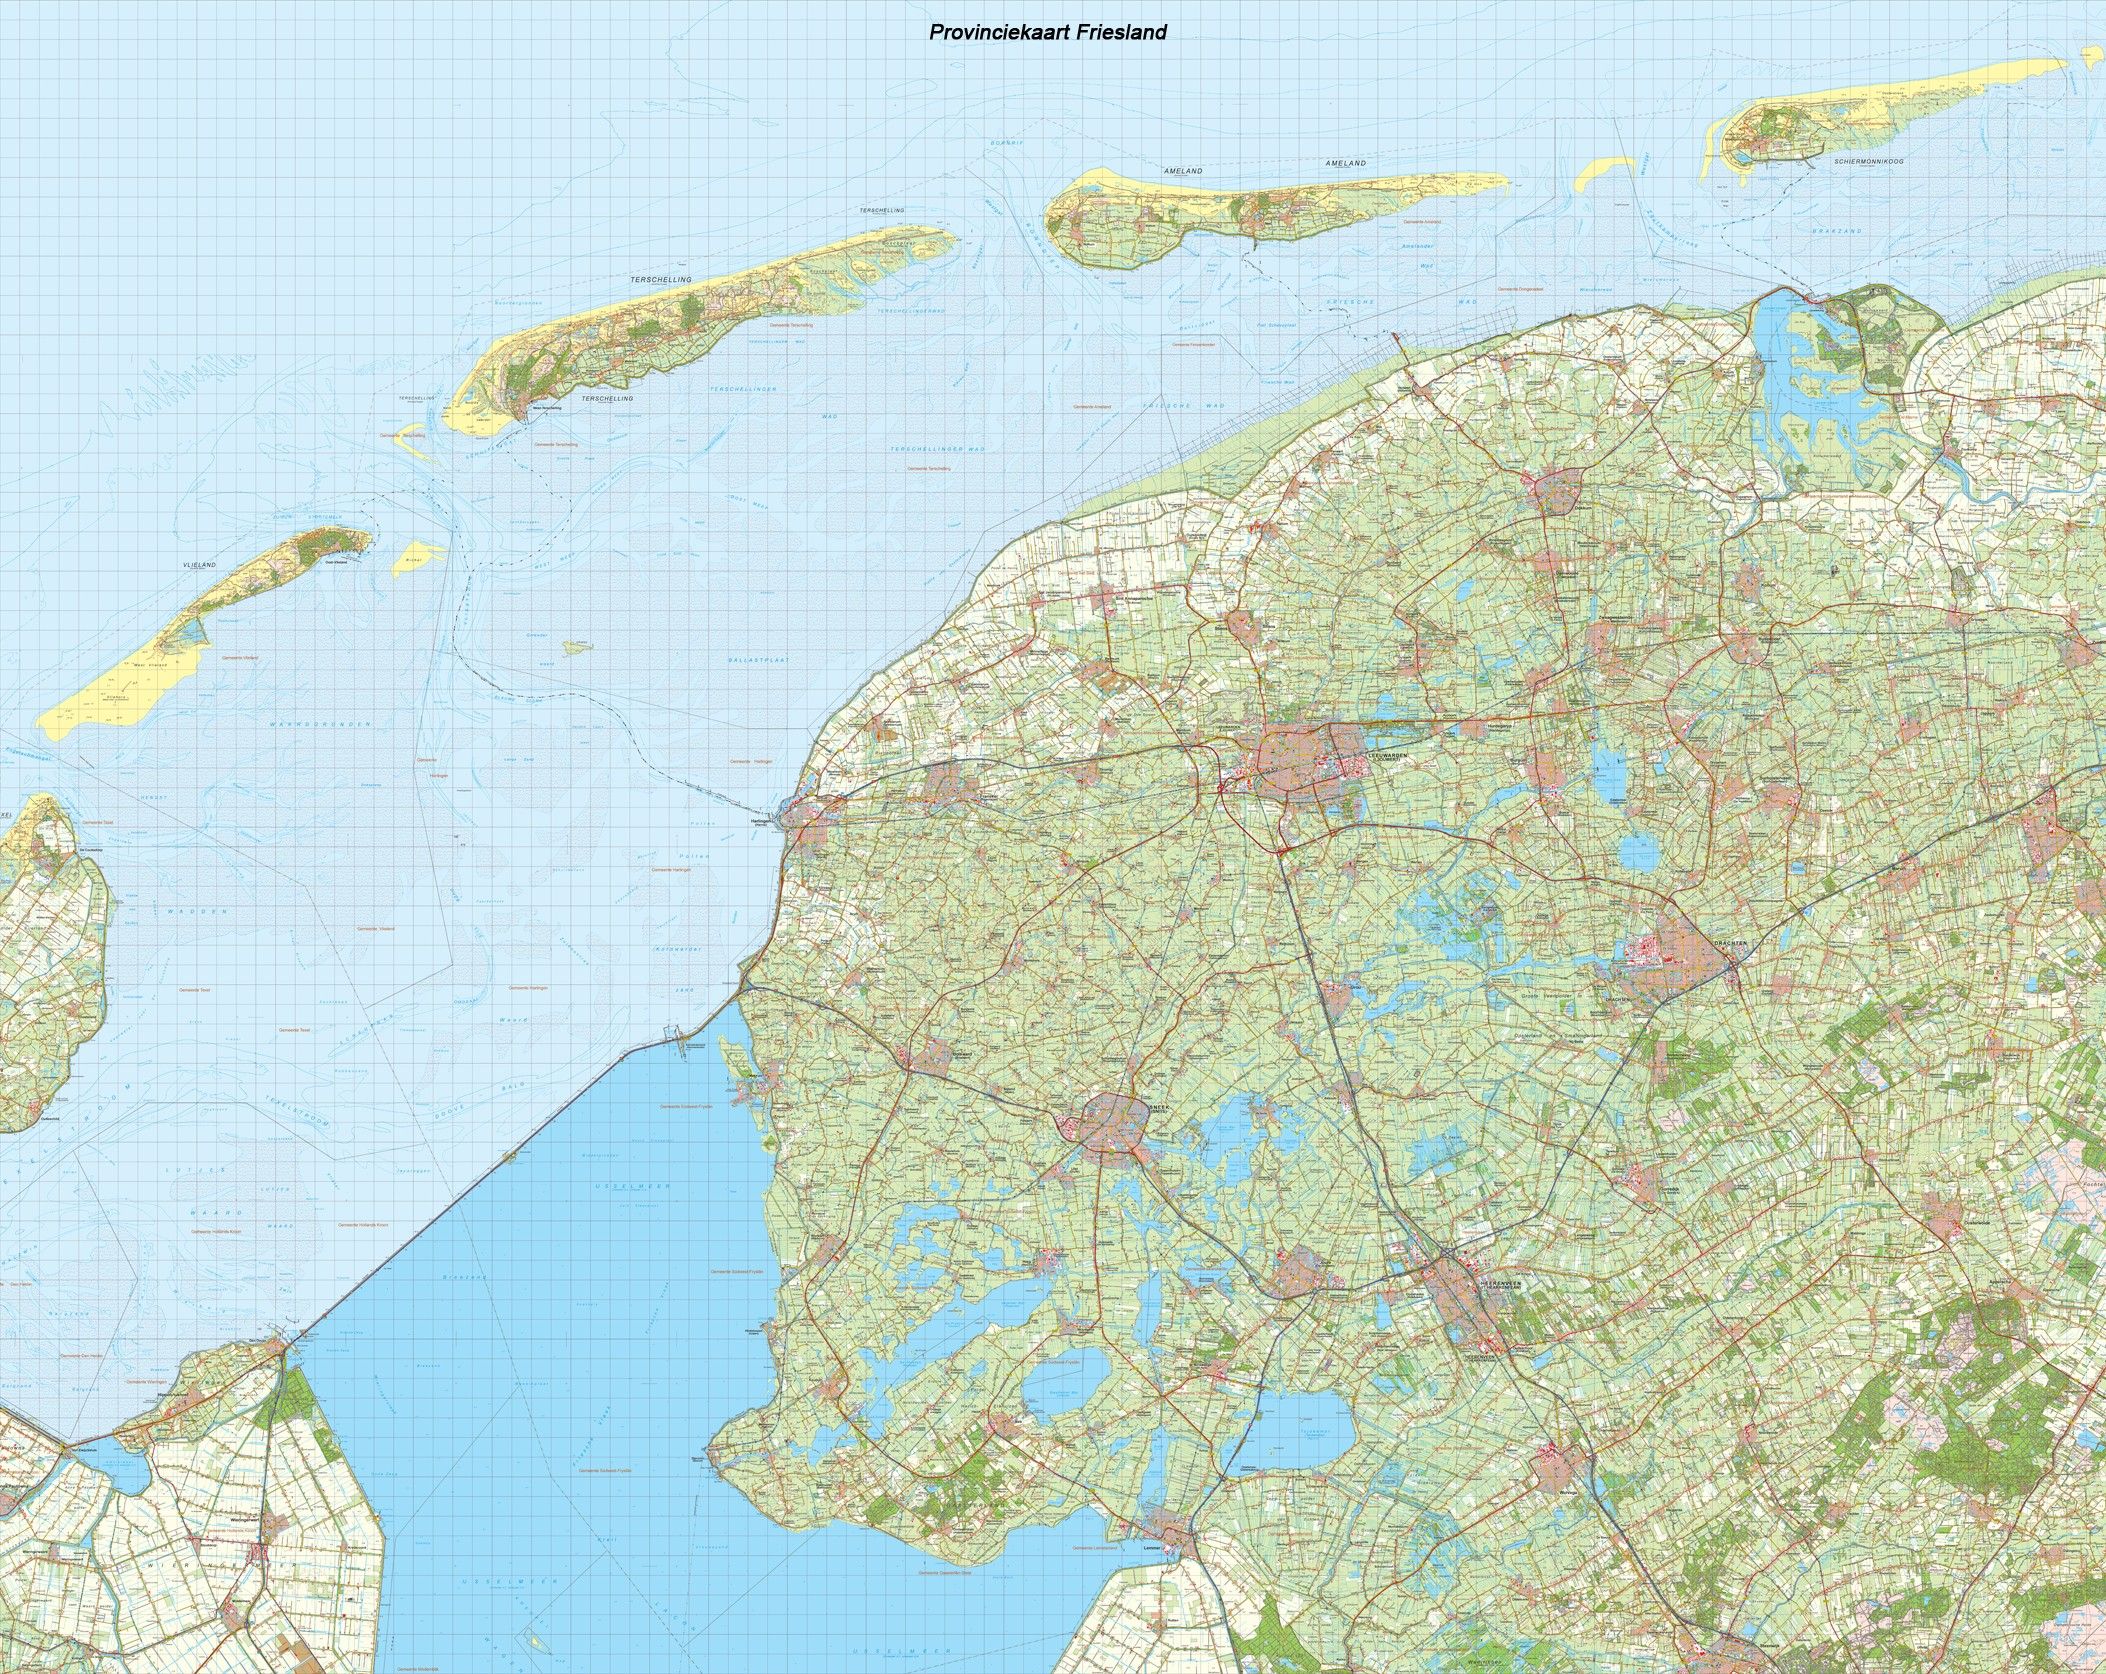 Provincie kaart Friesland schaal 1:50.000